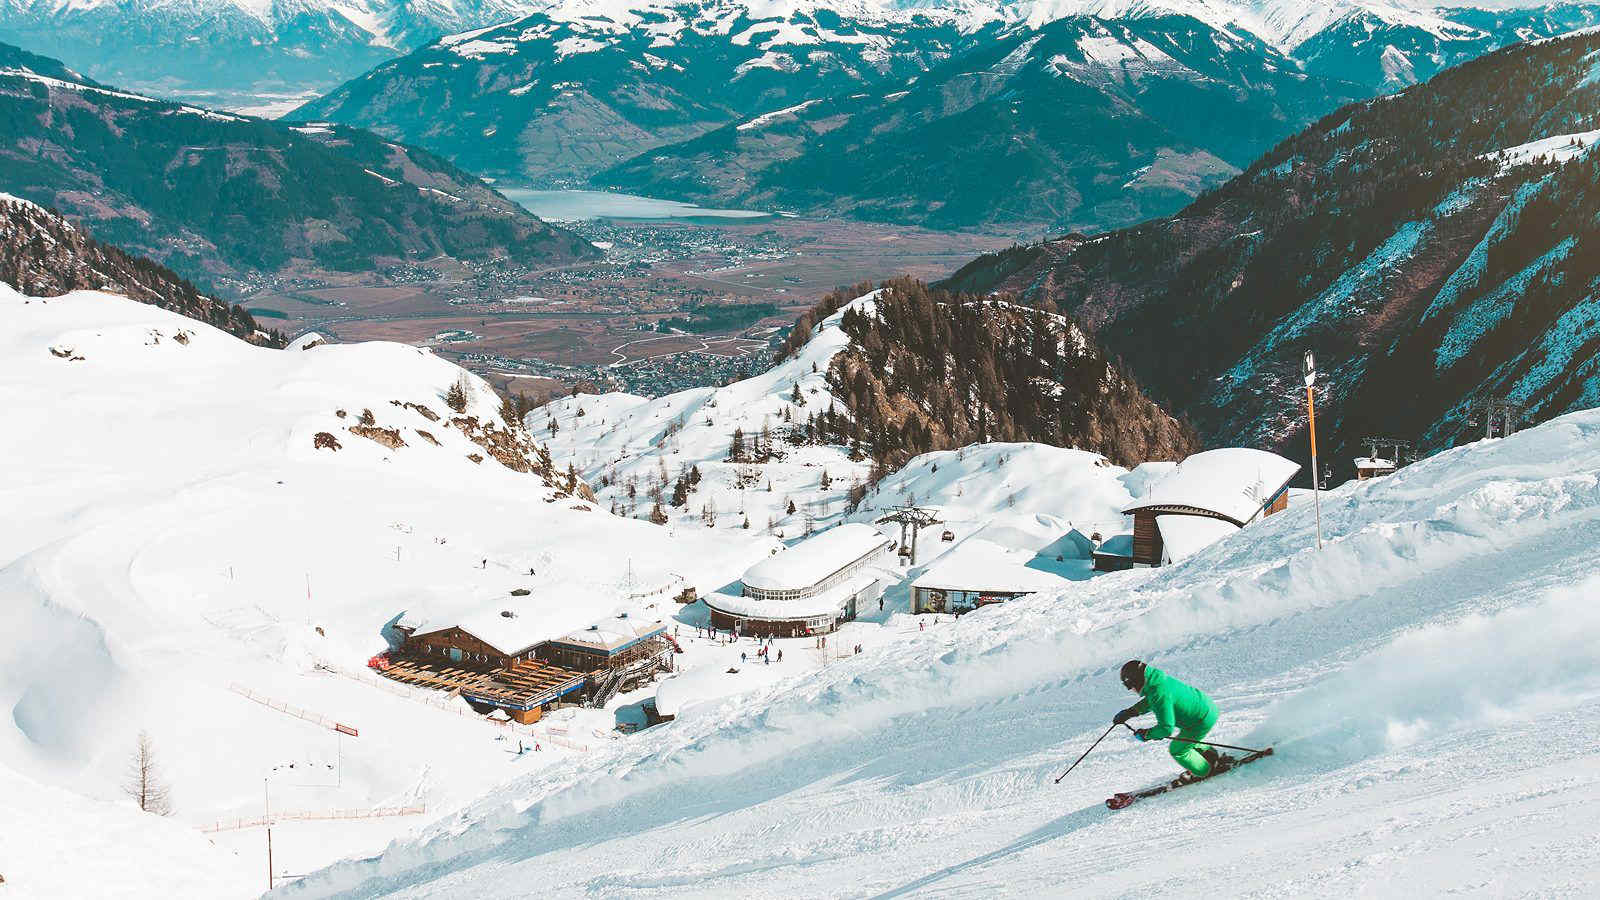 Settimana bianca: prezzi record per la montagna quest’inverno, skipass fino a 74 euro al giorno